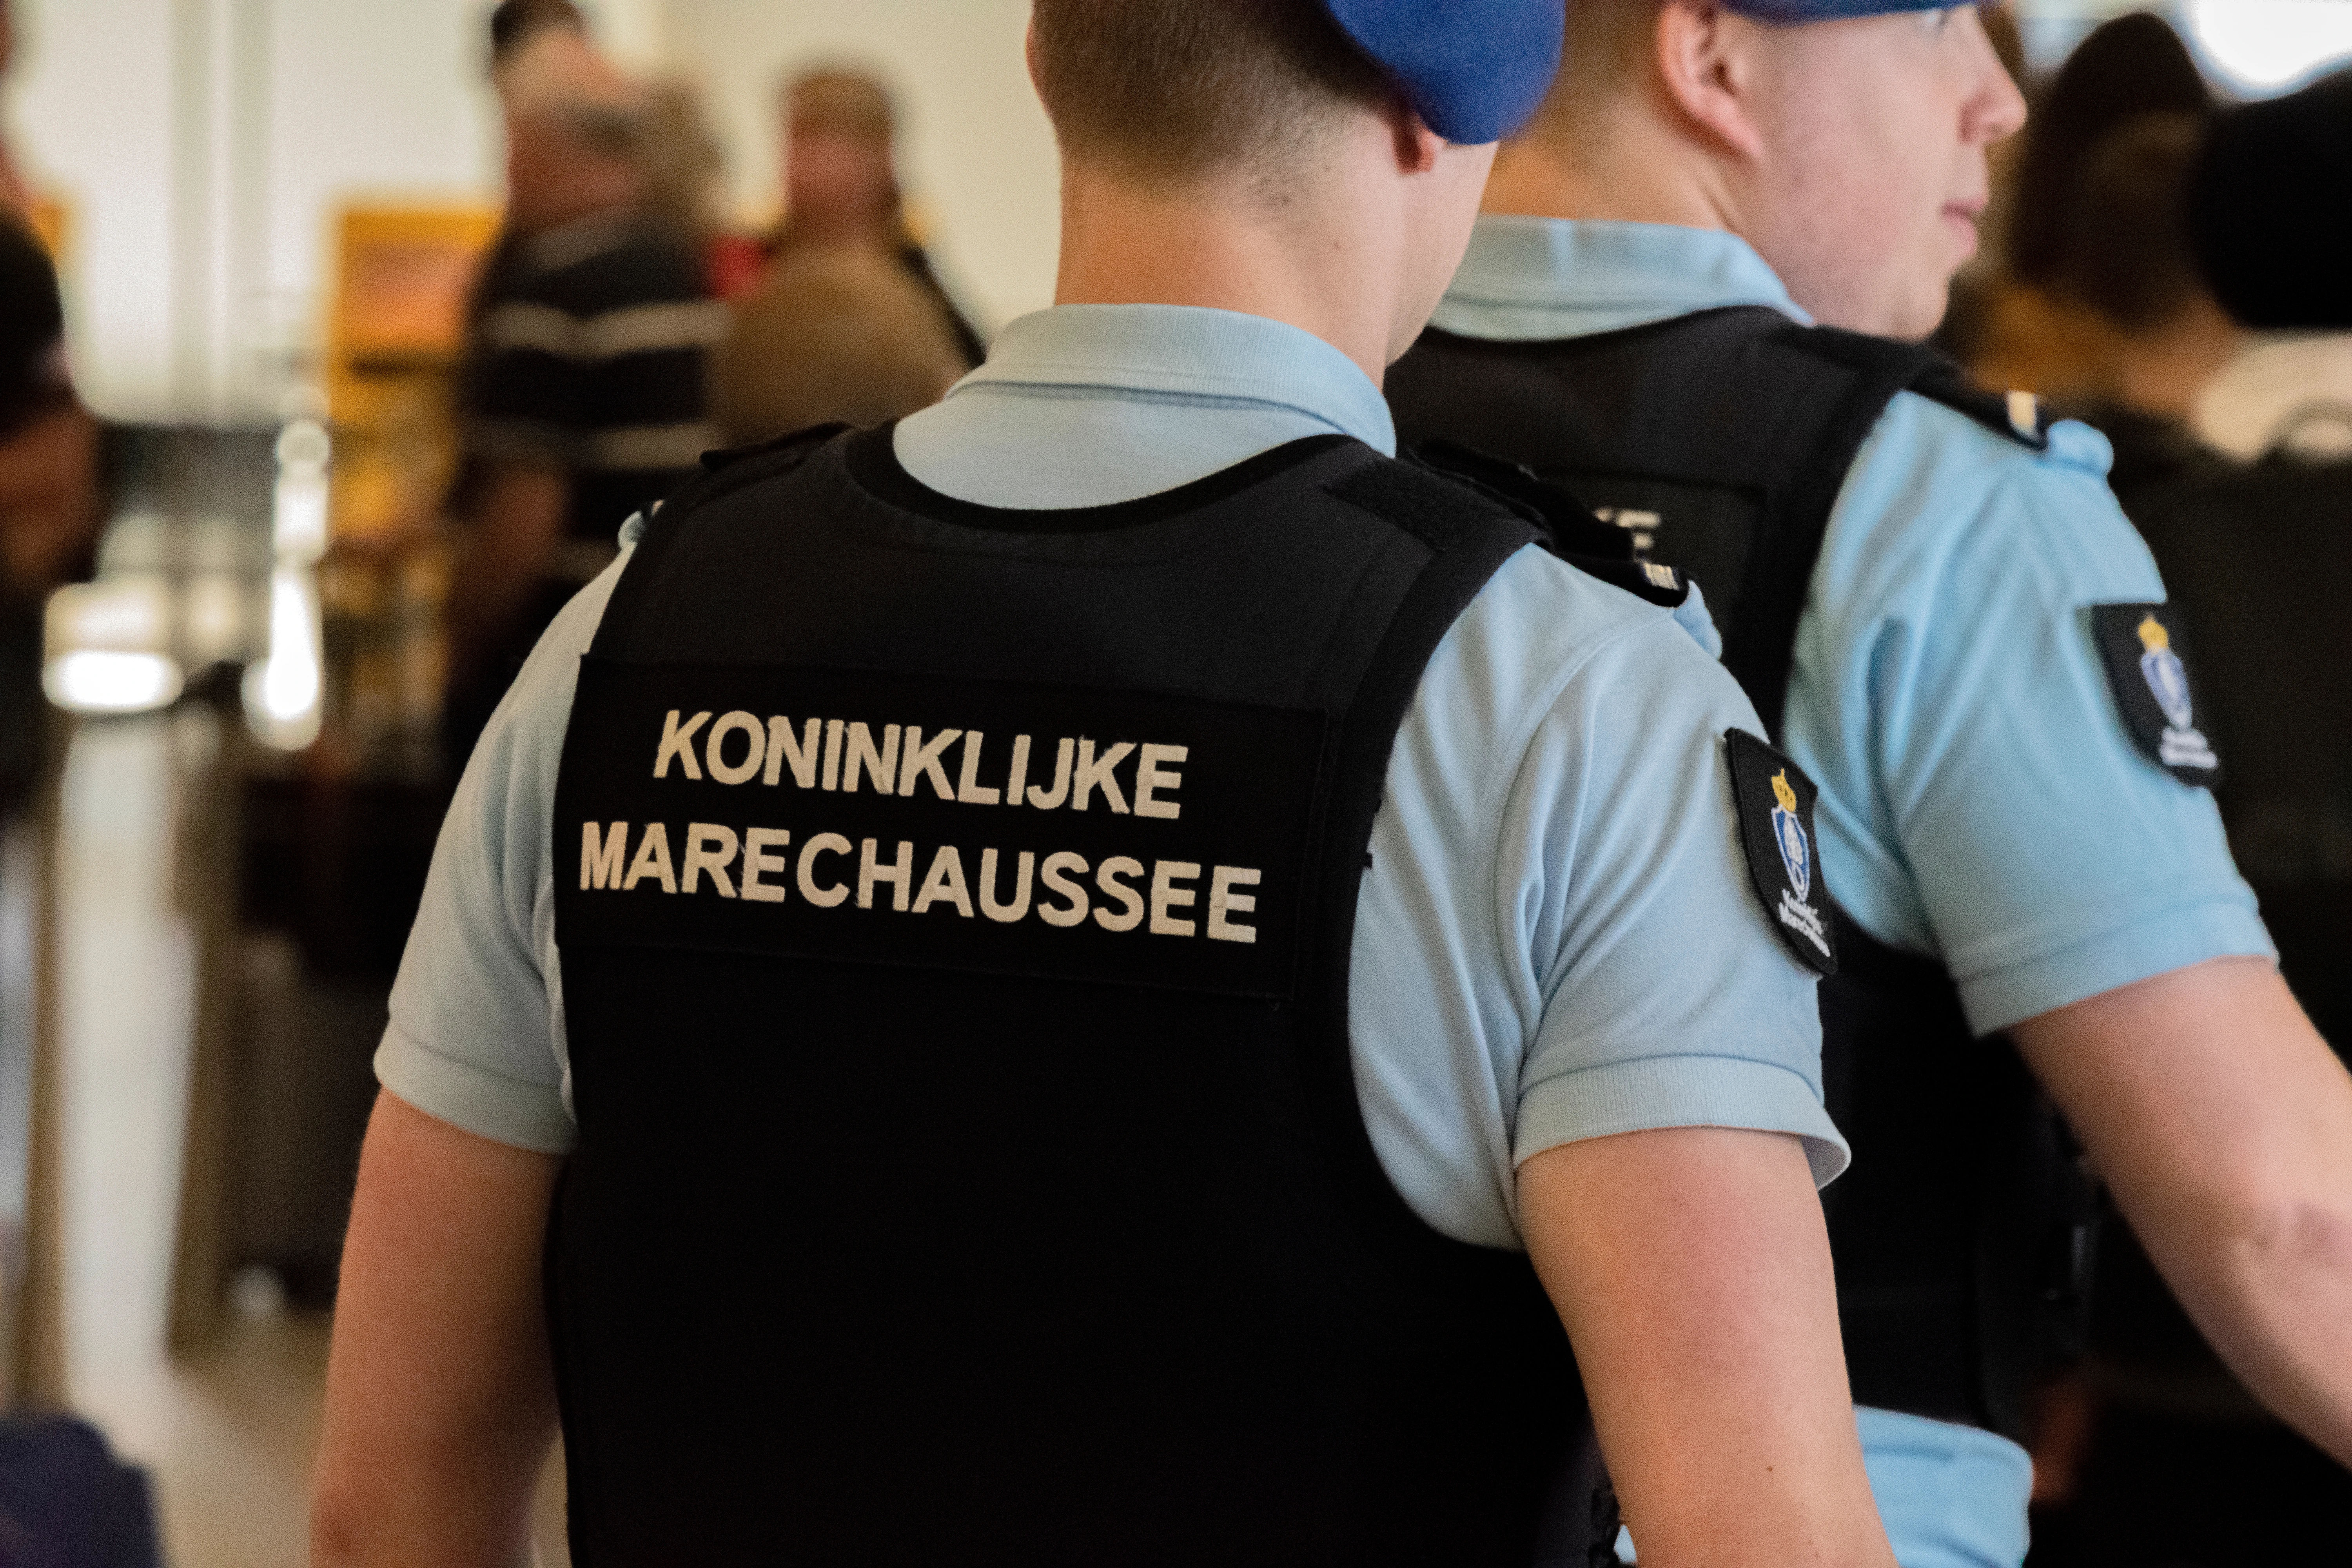 هل وصلت إلى هولندا عبر مطار سخيبهول أو ميناء؟ تبلغ عندئذ بوصولك لدى الشرطة العسكرية الملكية (KMaR) لطلب اللجوء.